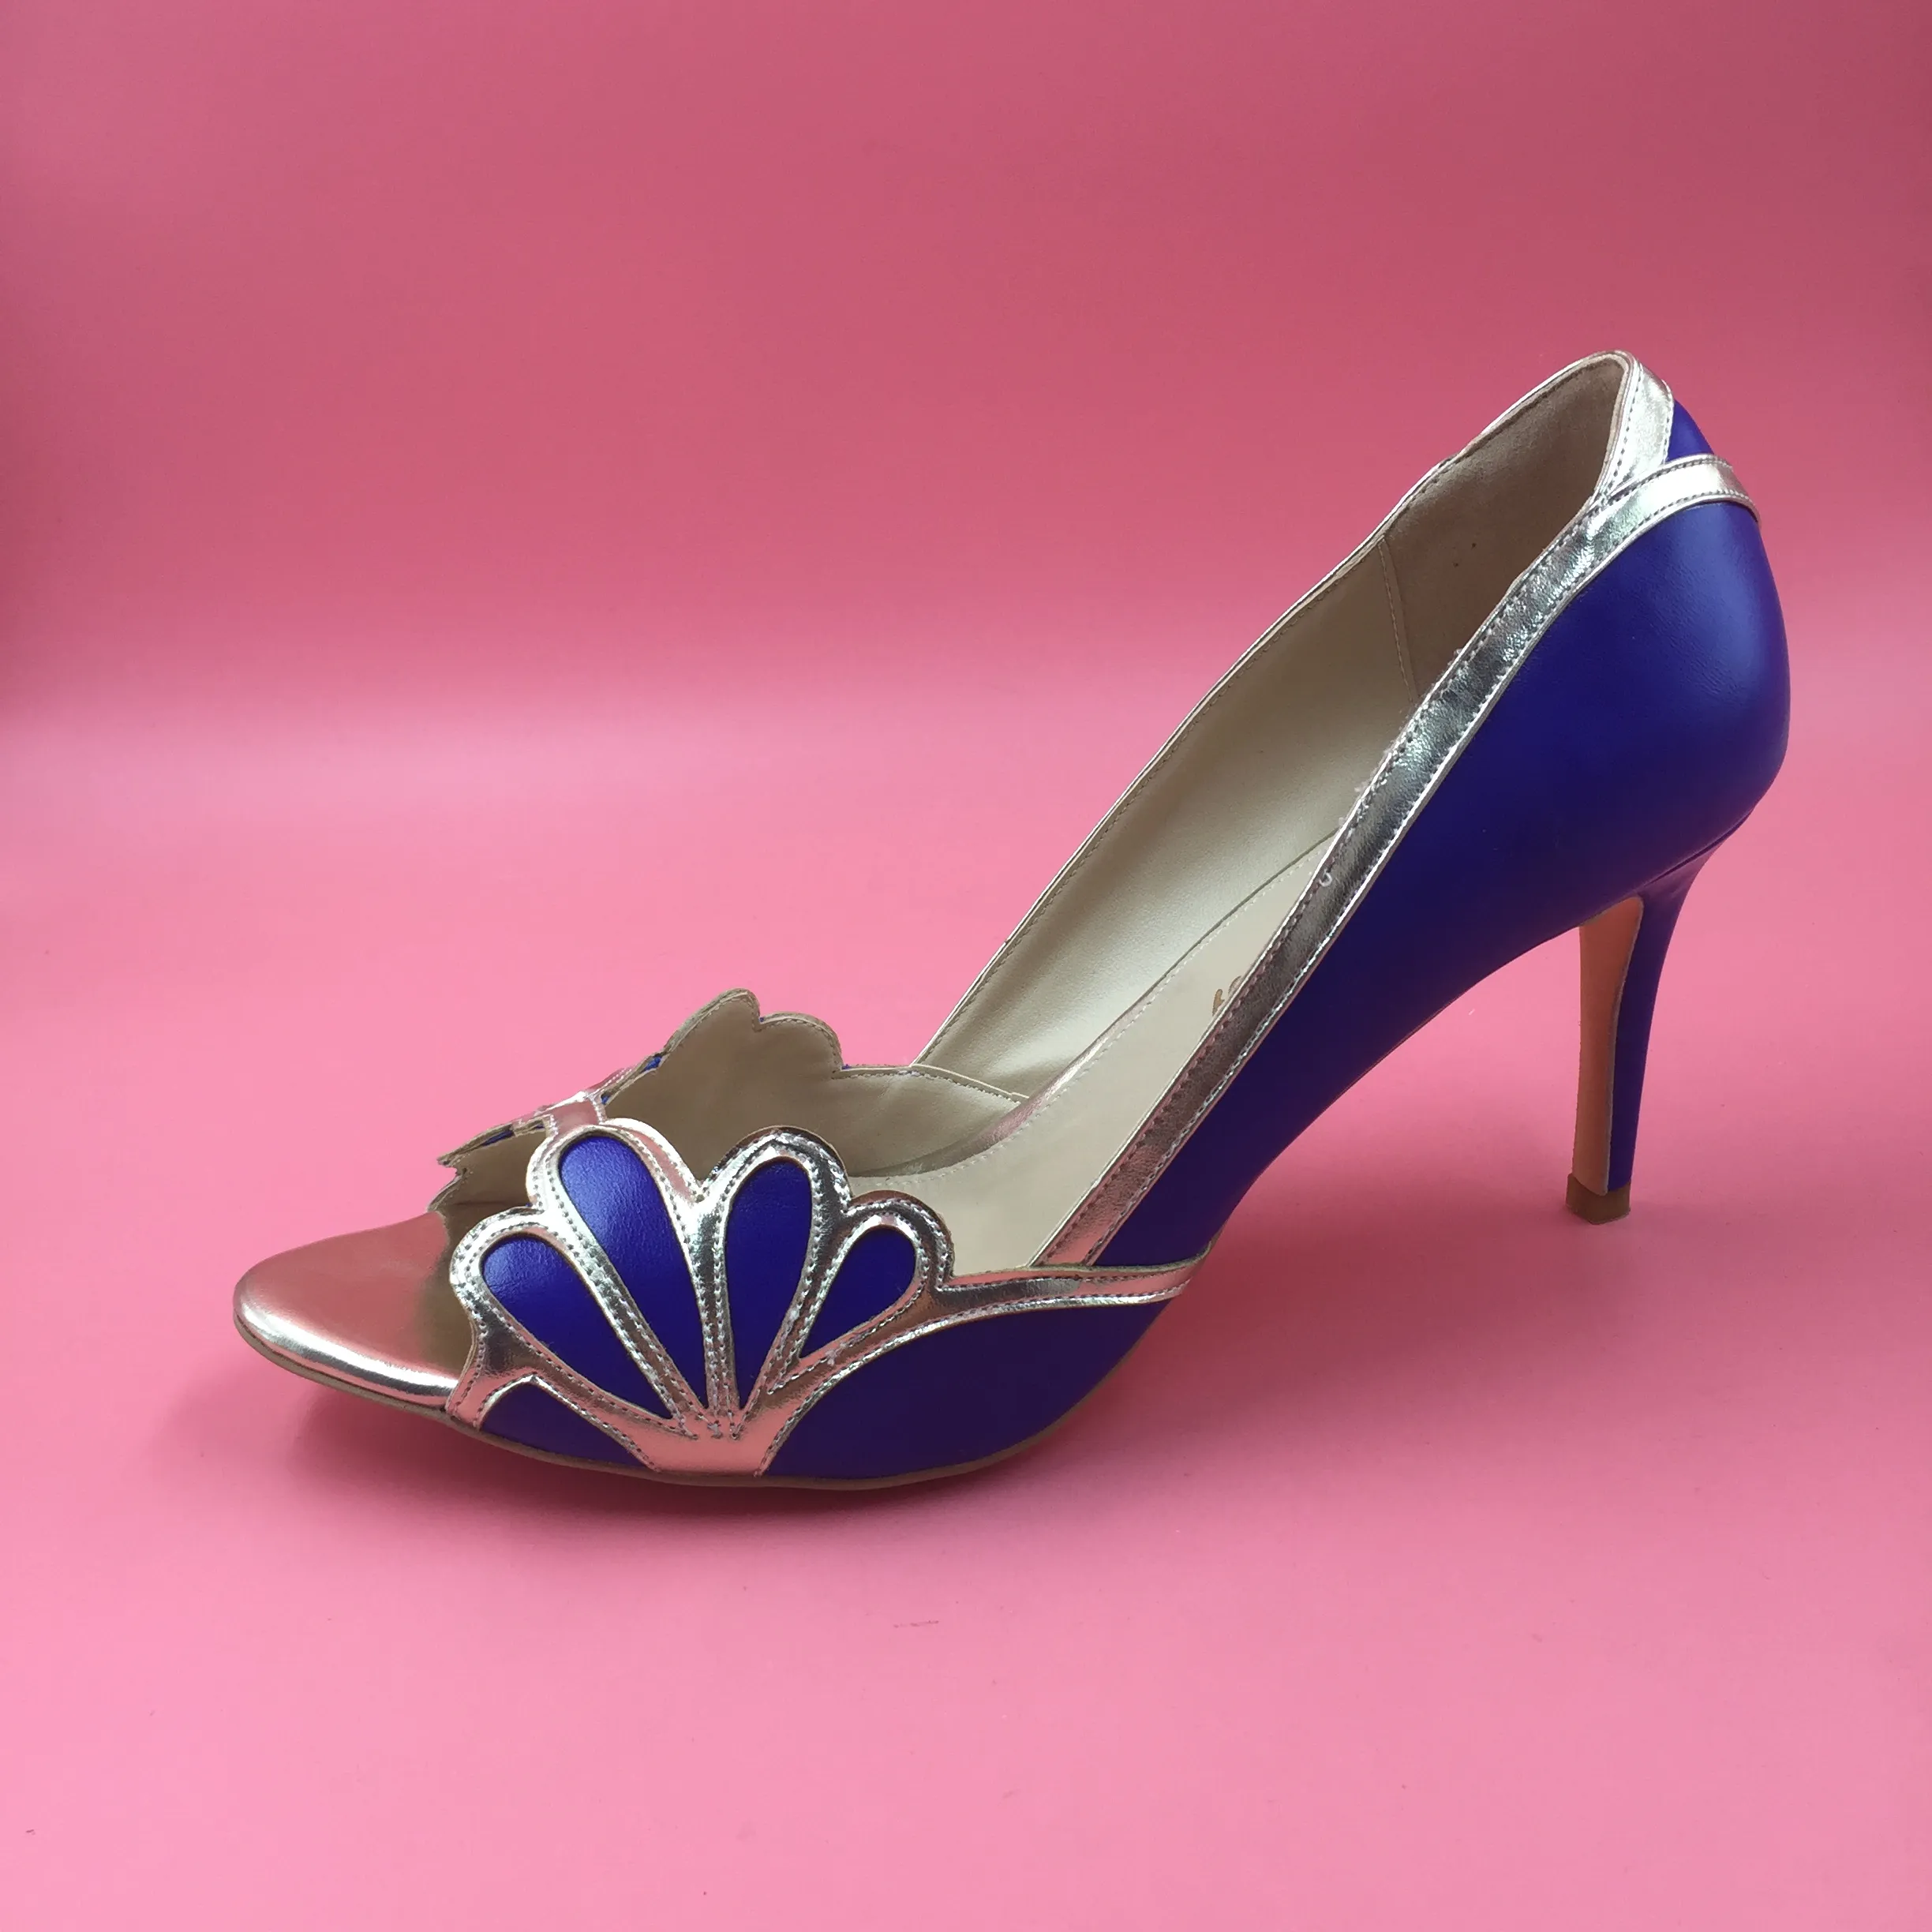 حقيقي الأزرق أحذية الزفاف 2016 خمر الزفاف إيزابيلا صدفي كعب هريرة pu اللمحة تو مخصص الصنادل مضخات مثير أنيقة أحذية